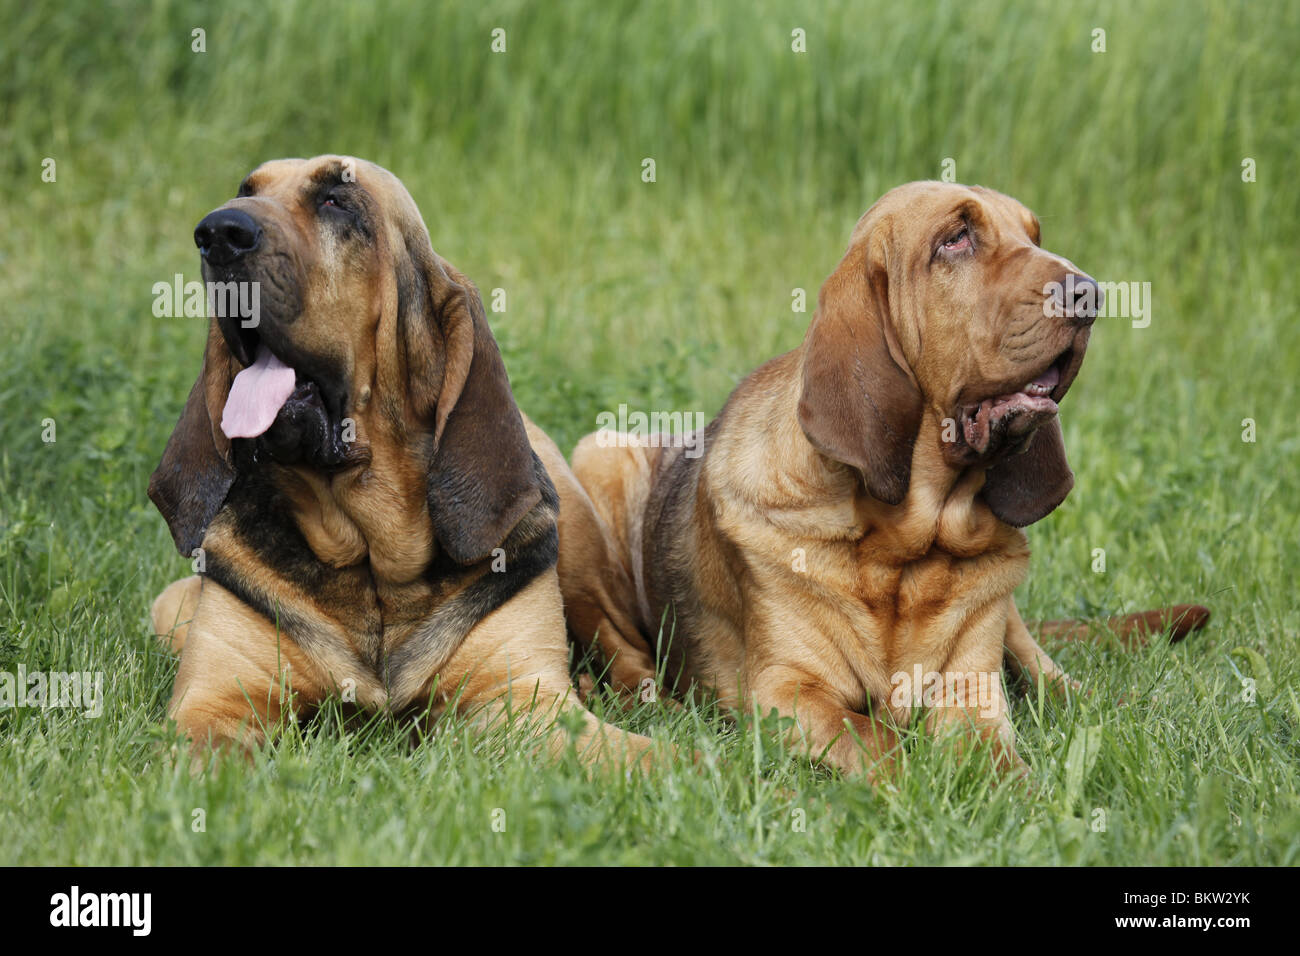 Bluthund auf Wiese / Bloodhound on meadow Stock Photo